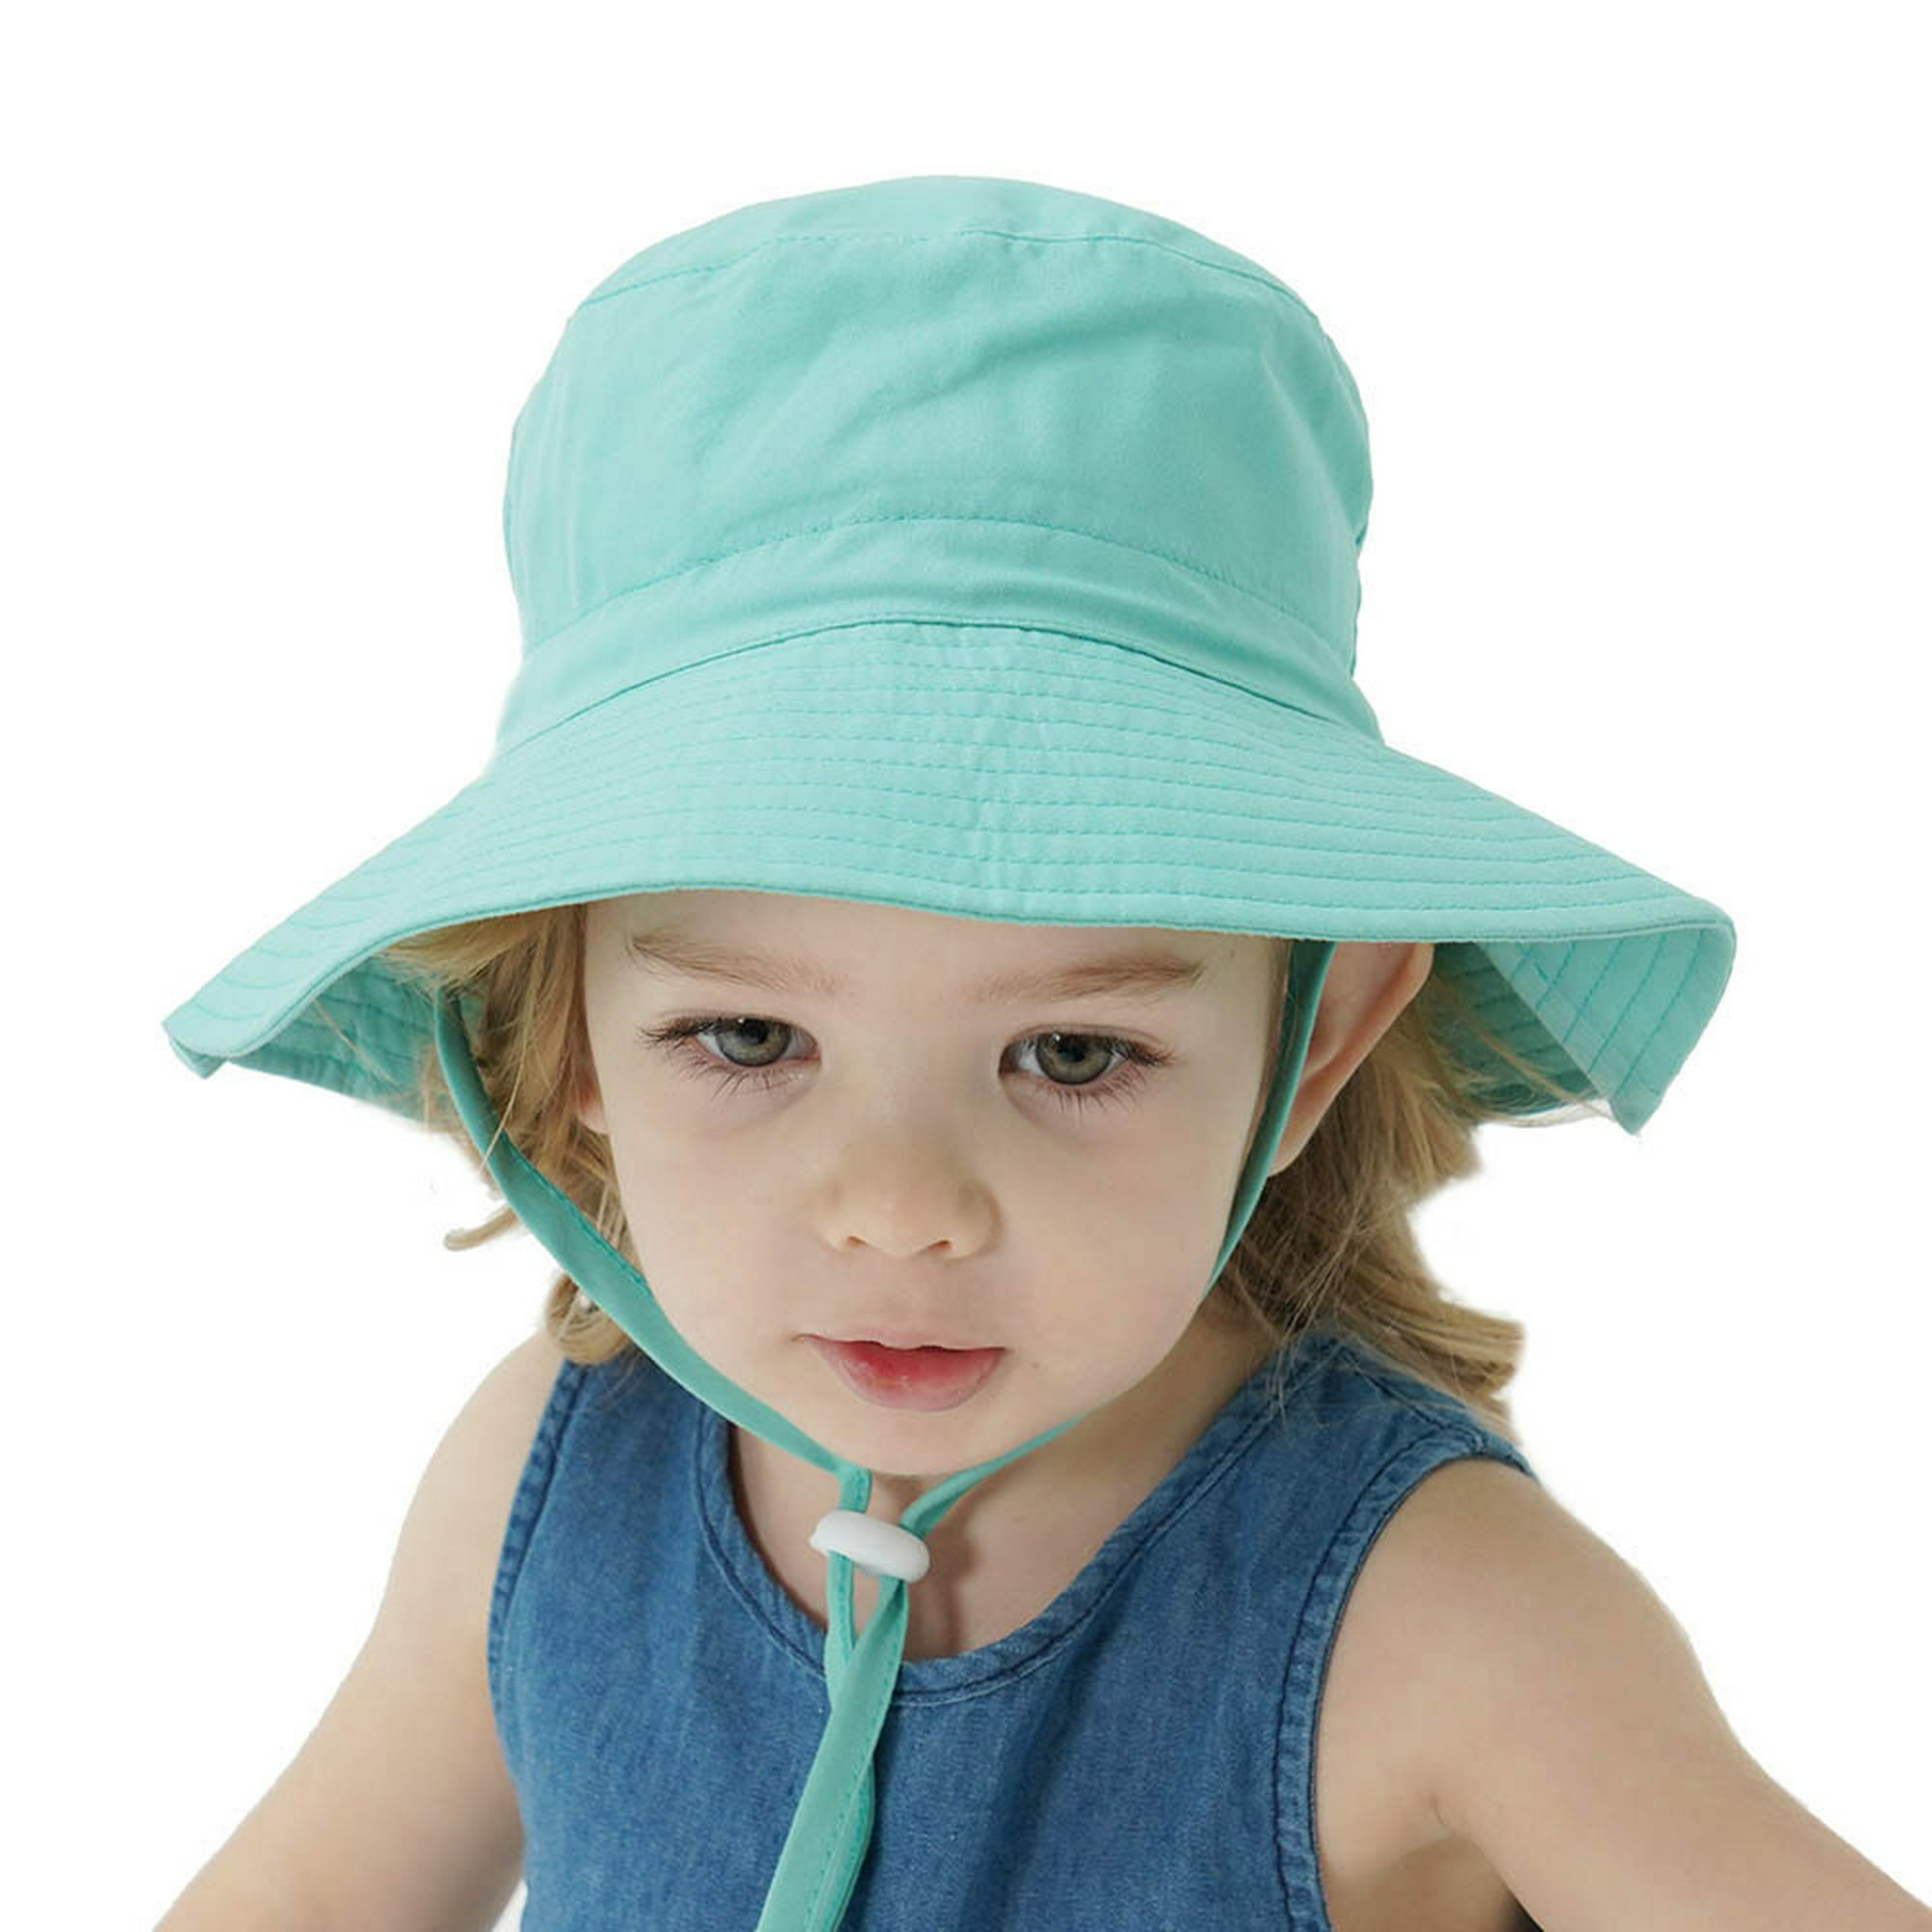 Sombrero de sol para bebé, playa de verano, Upf 50+, protección solar, sombreros para bebés, sombreros para niños pequeños, gorra para niña, niño, sombrero de cubo LingWen 8390613749468 en línea